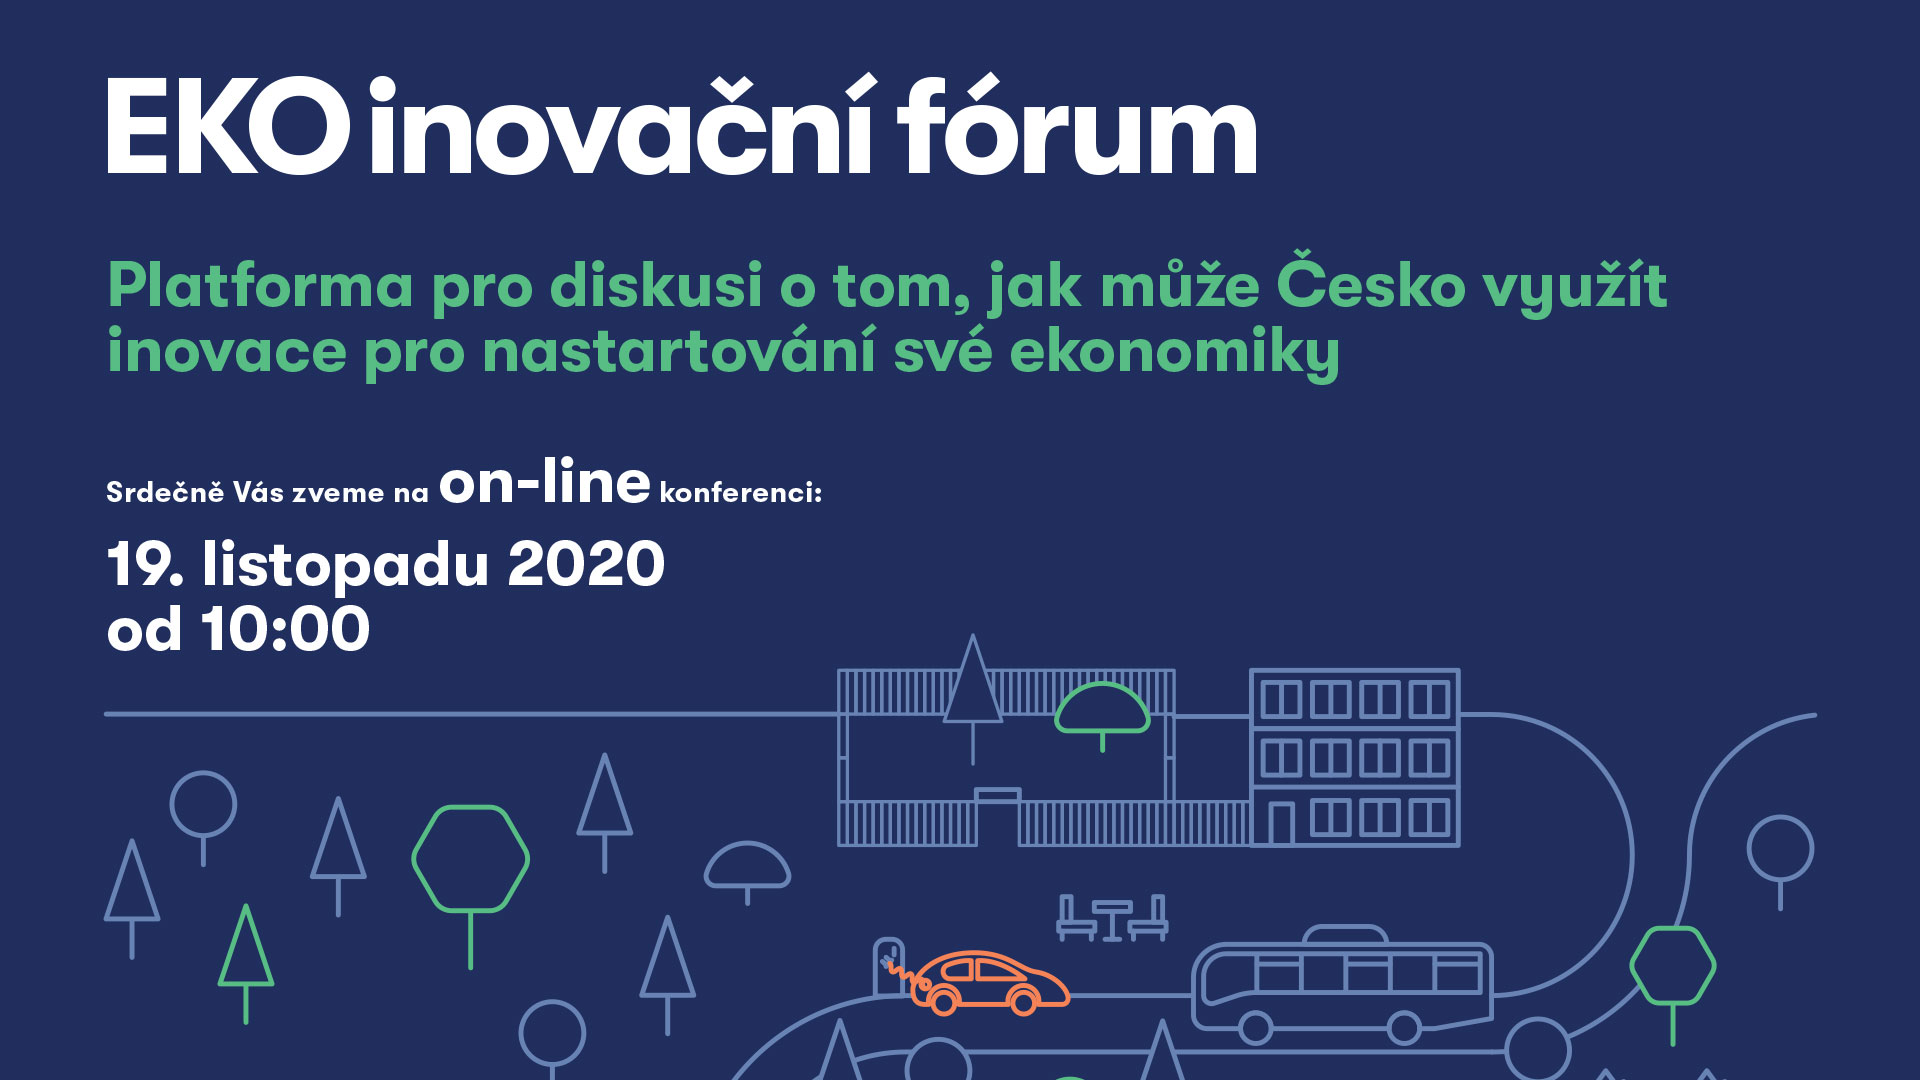 EkoInovační fórum: Platforma pro diskusi o tom, jak může Česko využít inovace pro nastartování své ekonomiky